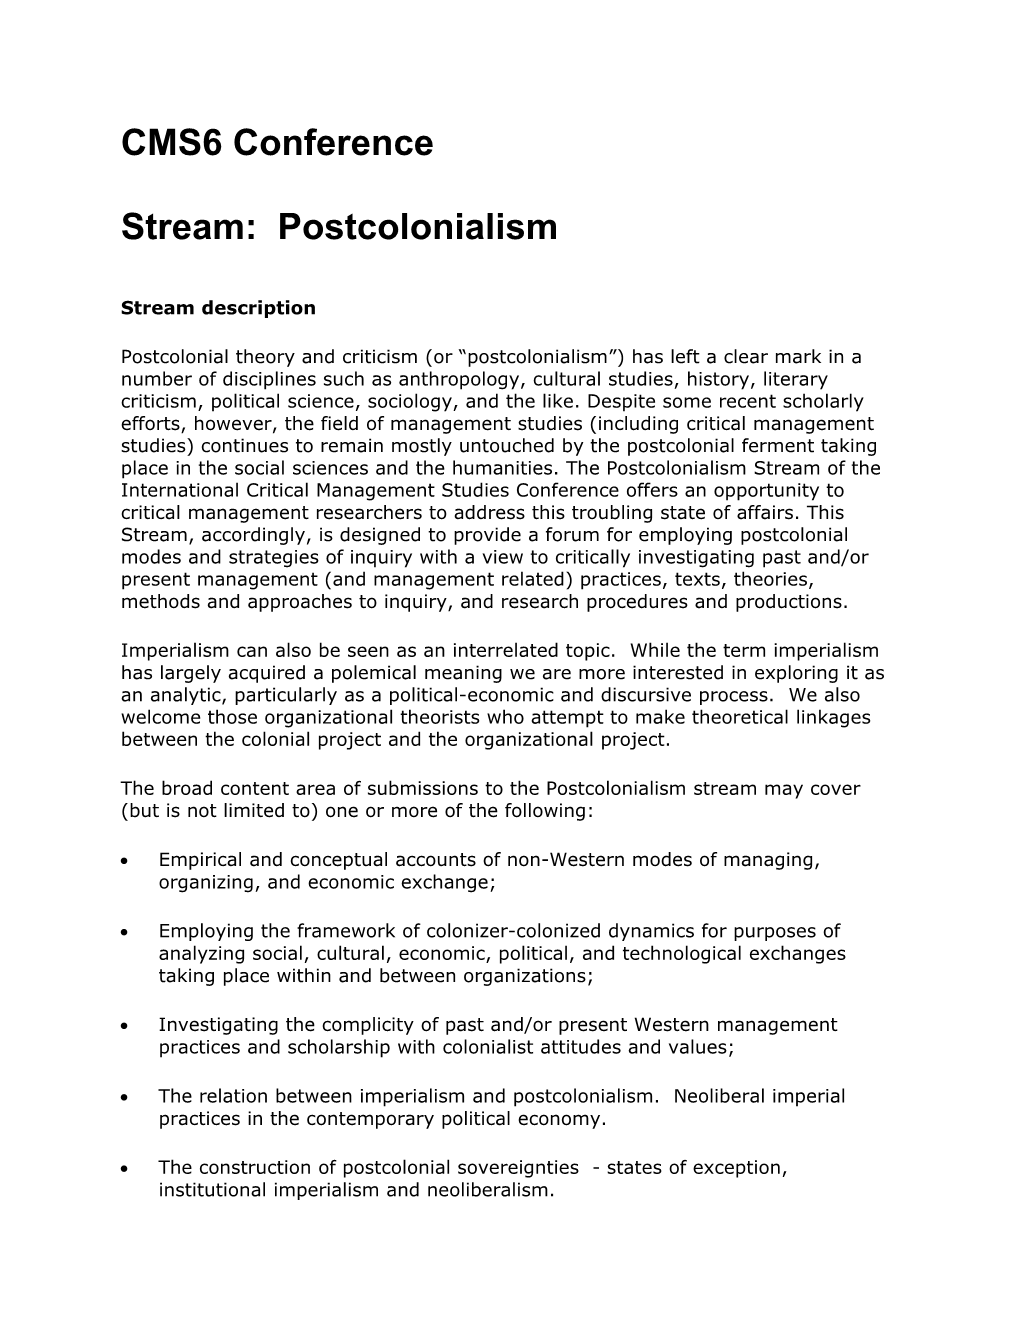 Stream: Postcolonialism